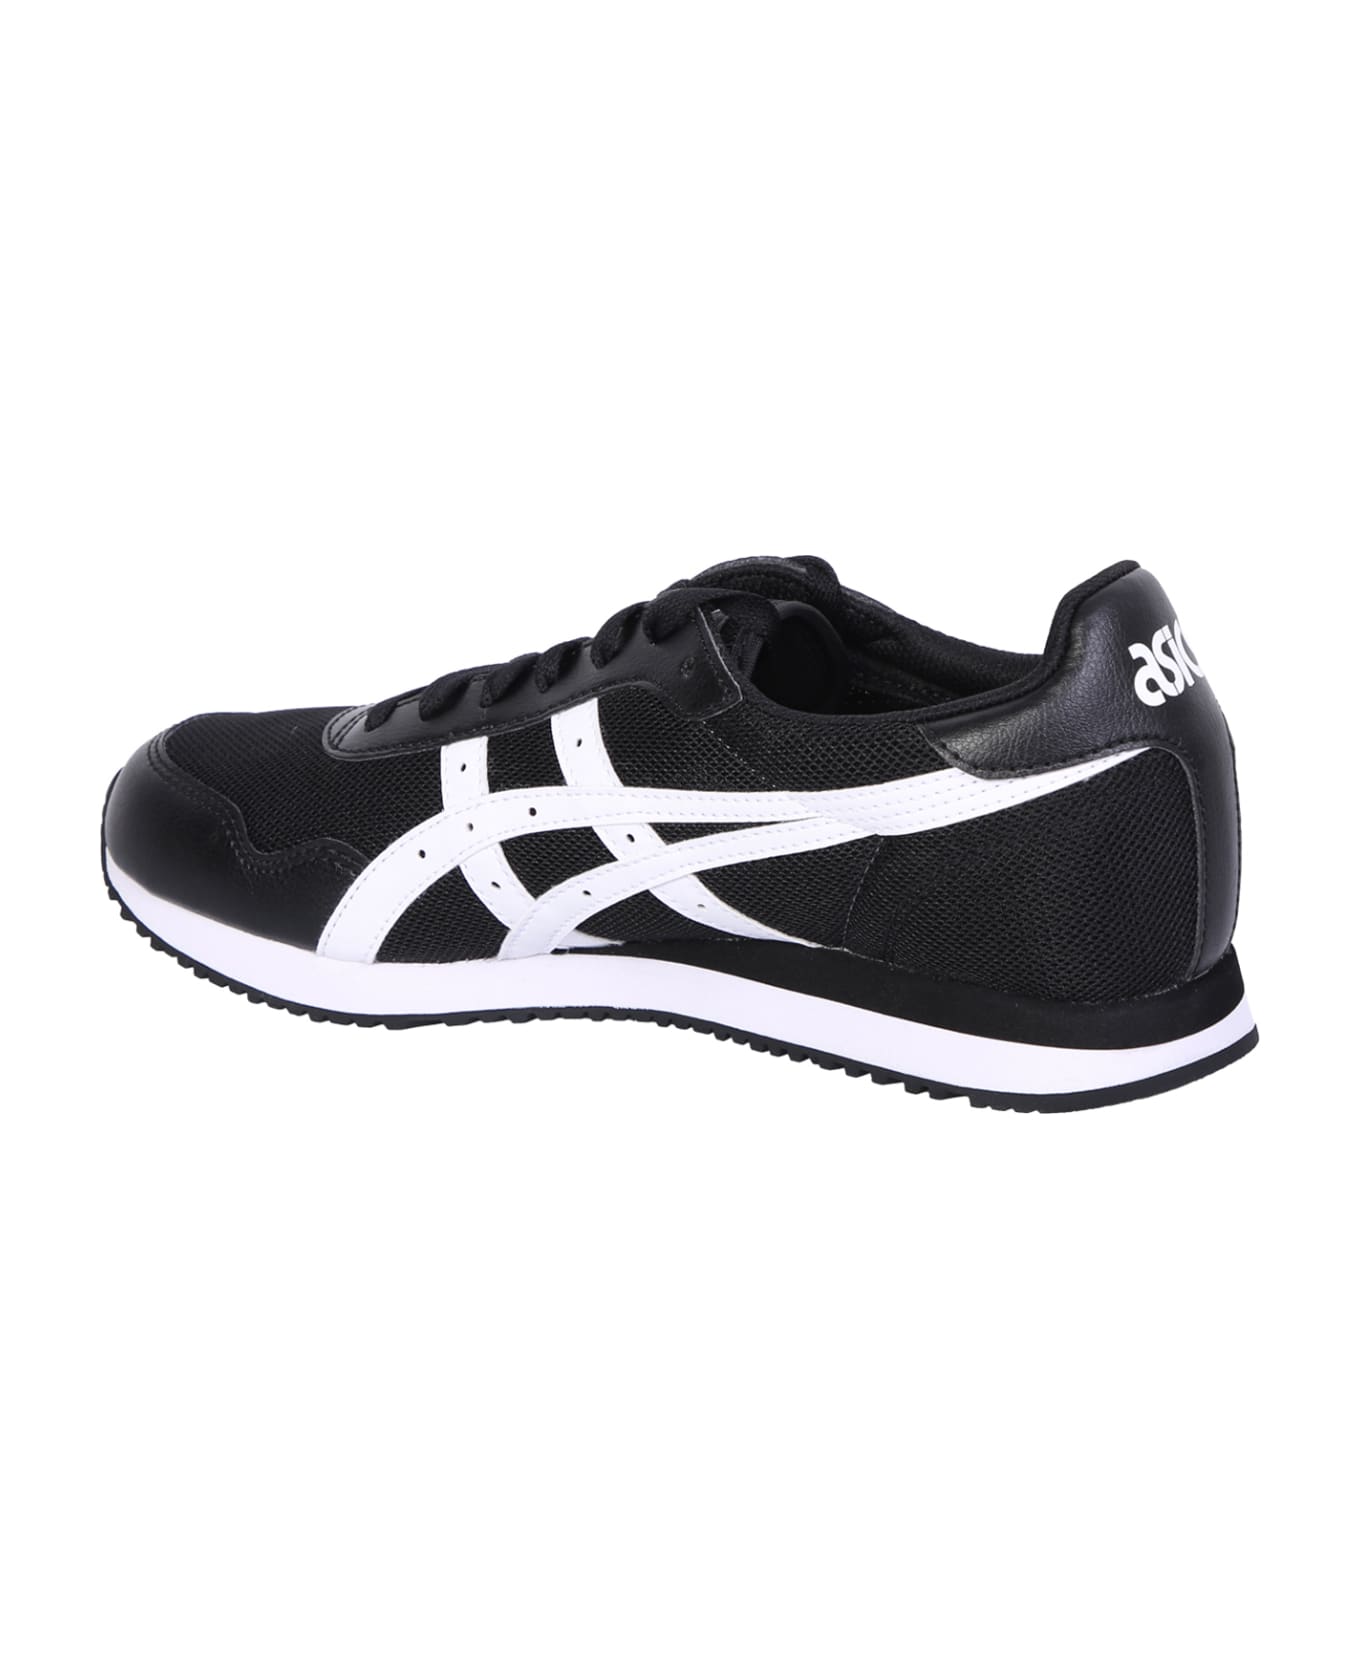 Asics Black/ White Tiger Runner Sneakers - Black